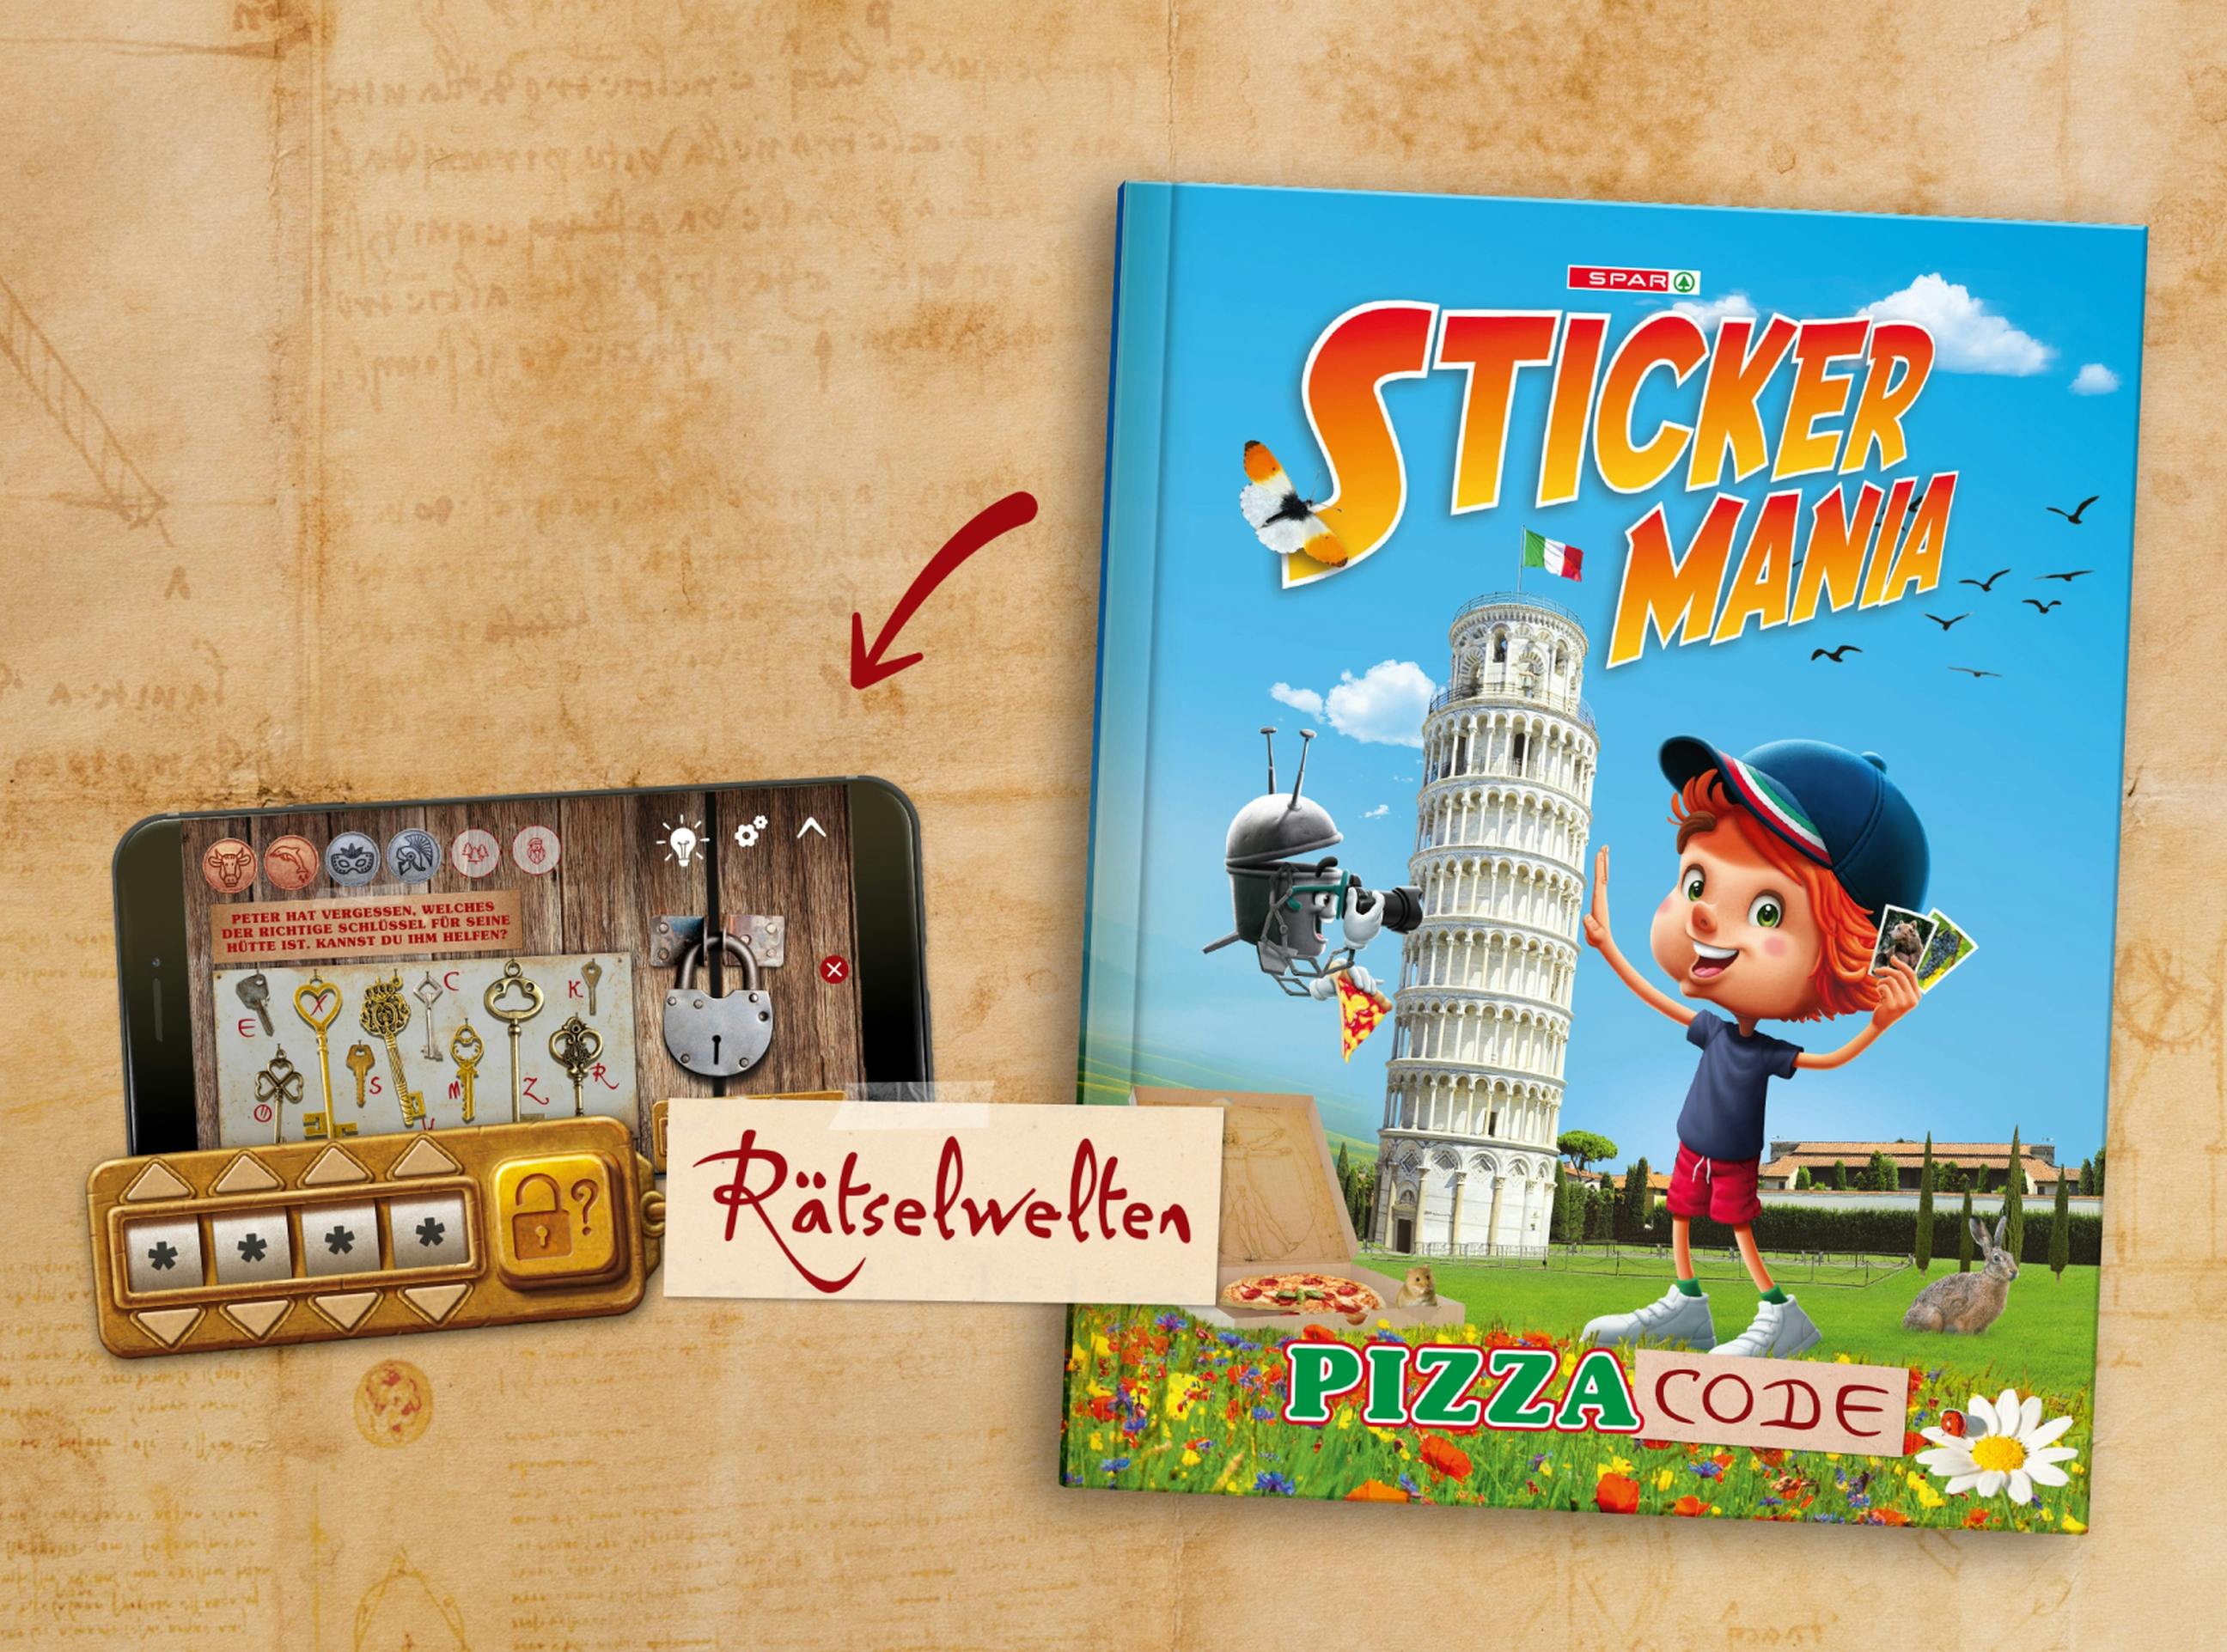 Da Vinci Style Hintergrund mit Stickermania Sammelalbum Pizza Code und einer Abbildung eines Handys mit den Online-Rätselwelten © good matters